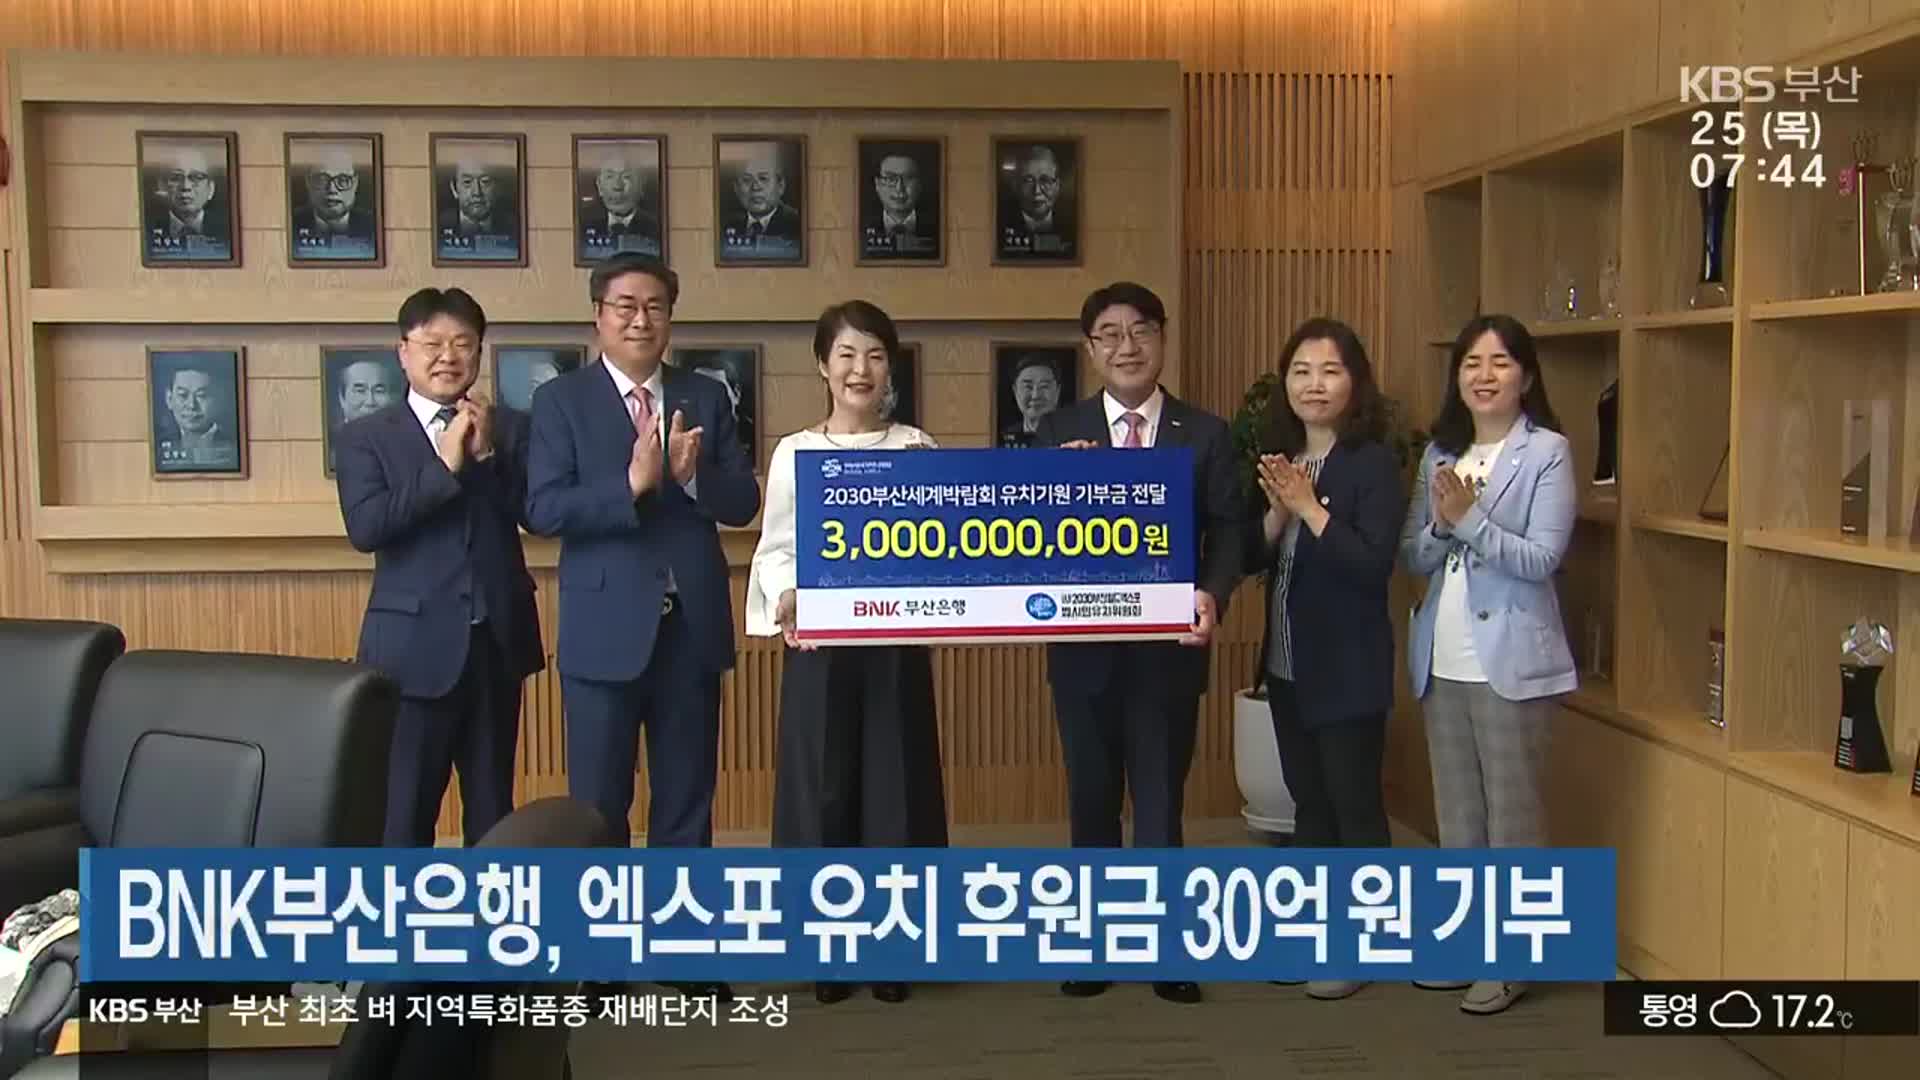 BNK부산은행, 엑스포 유치 후원금 30억 원 기부